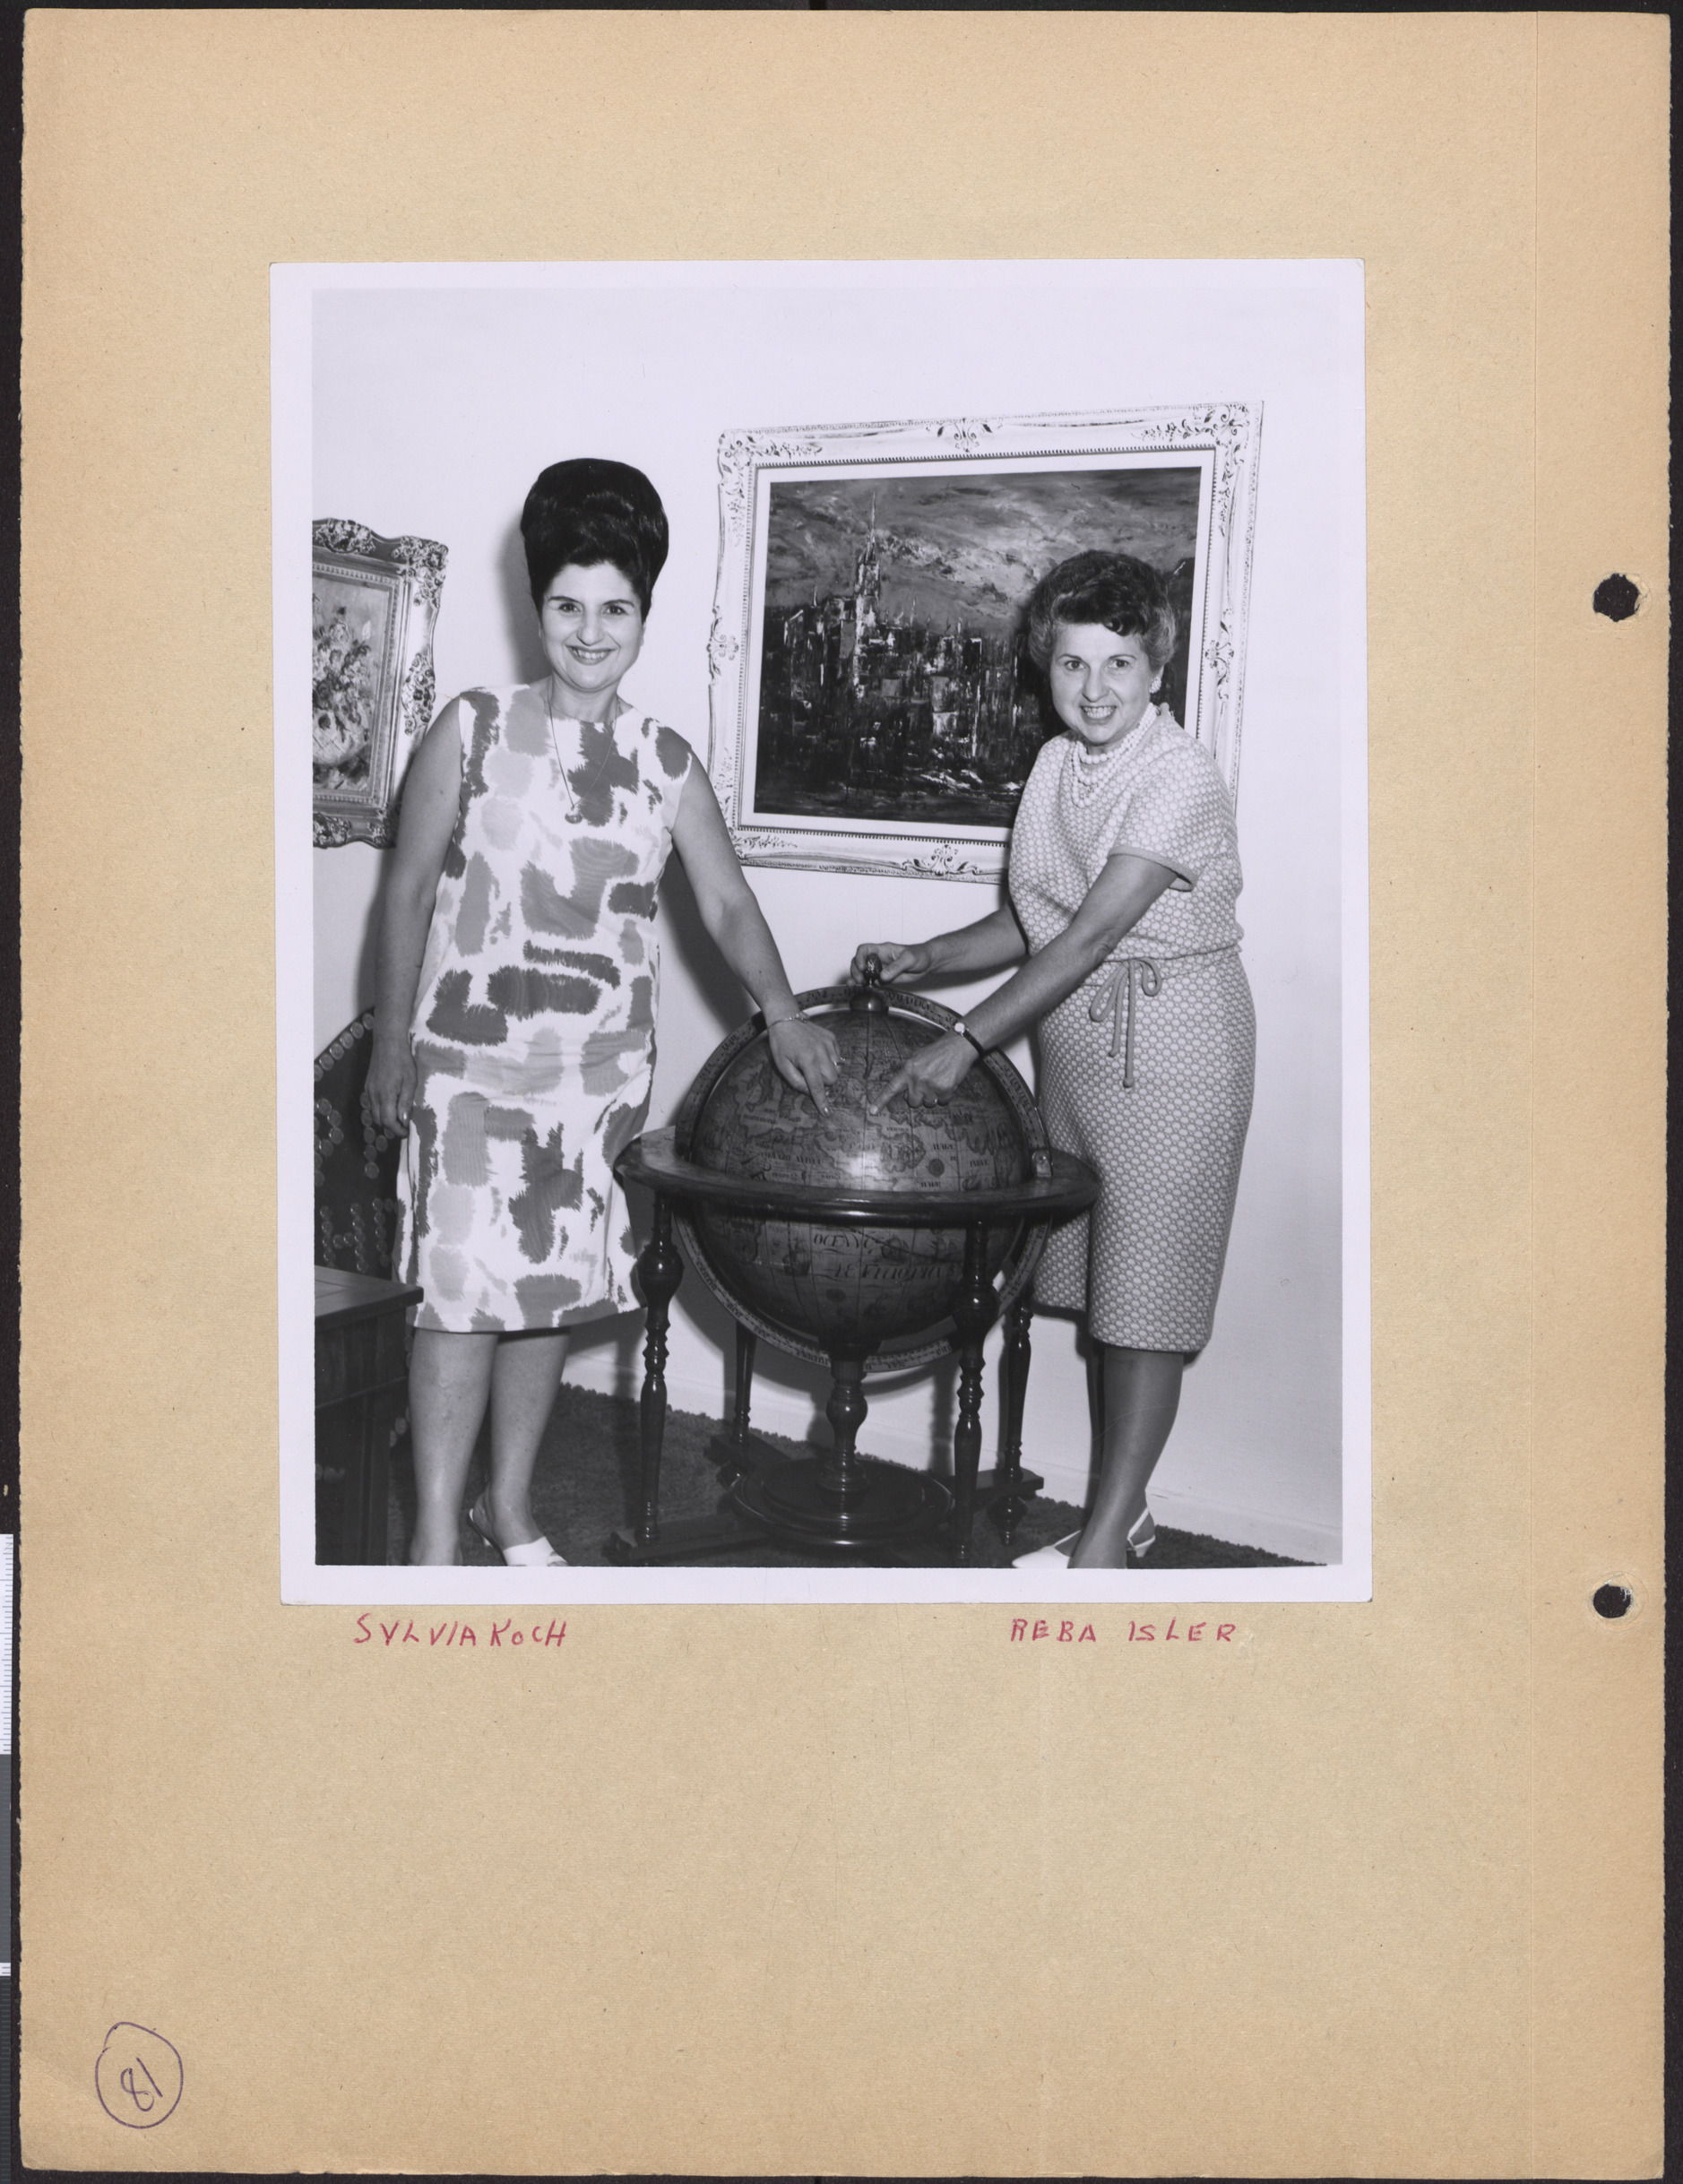 Photograph of Sylvia Koch and Reba Isler pointing at a globe